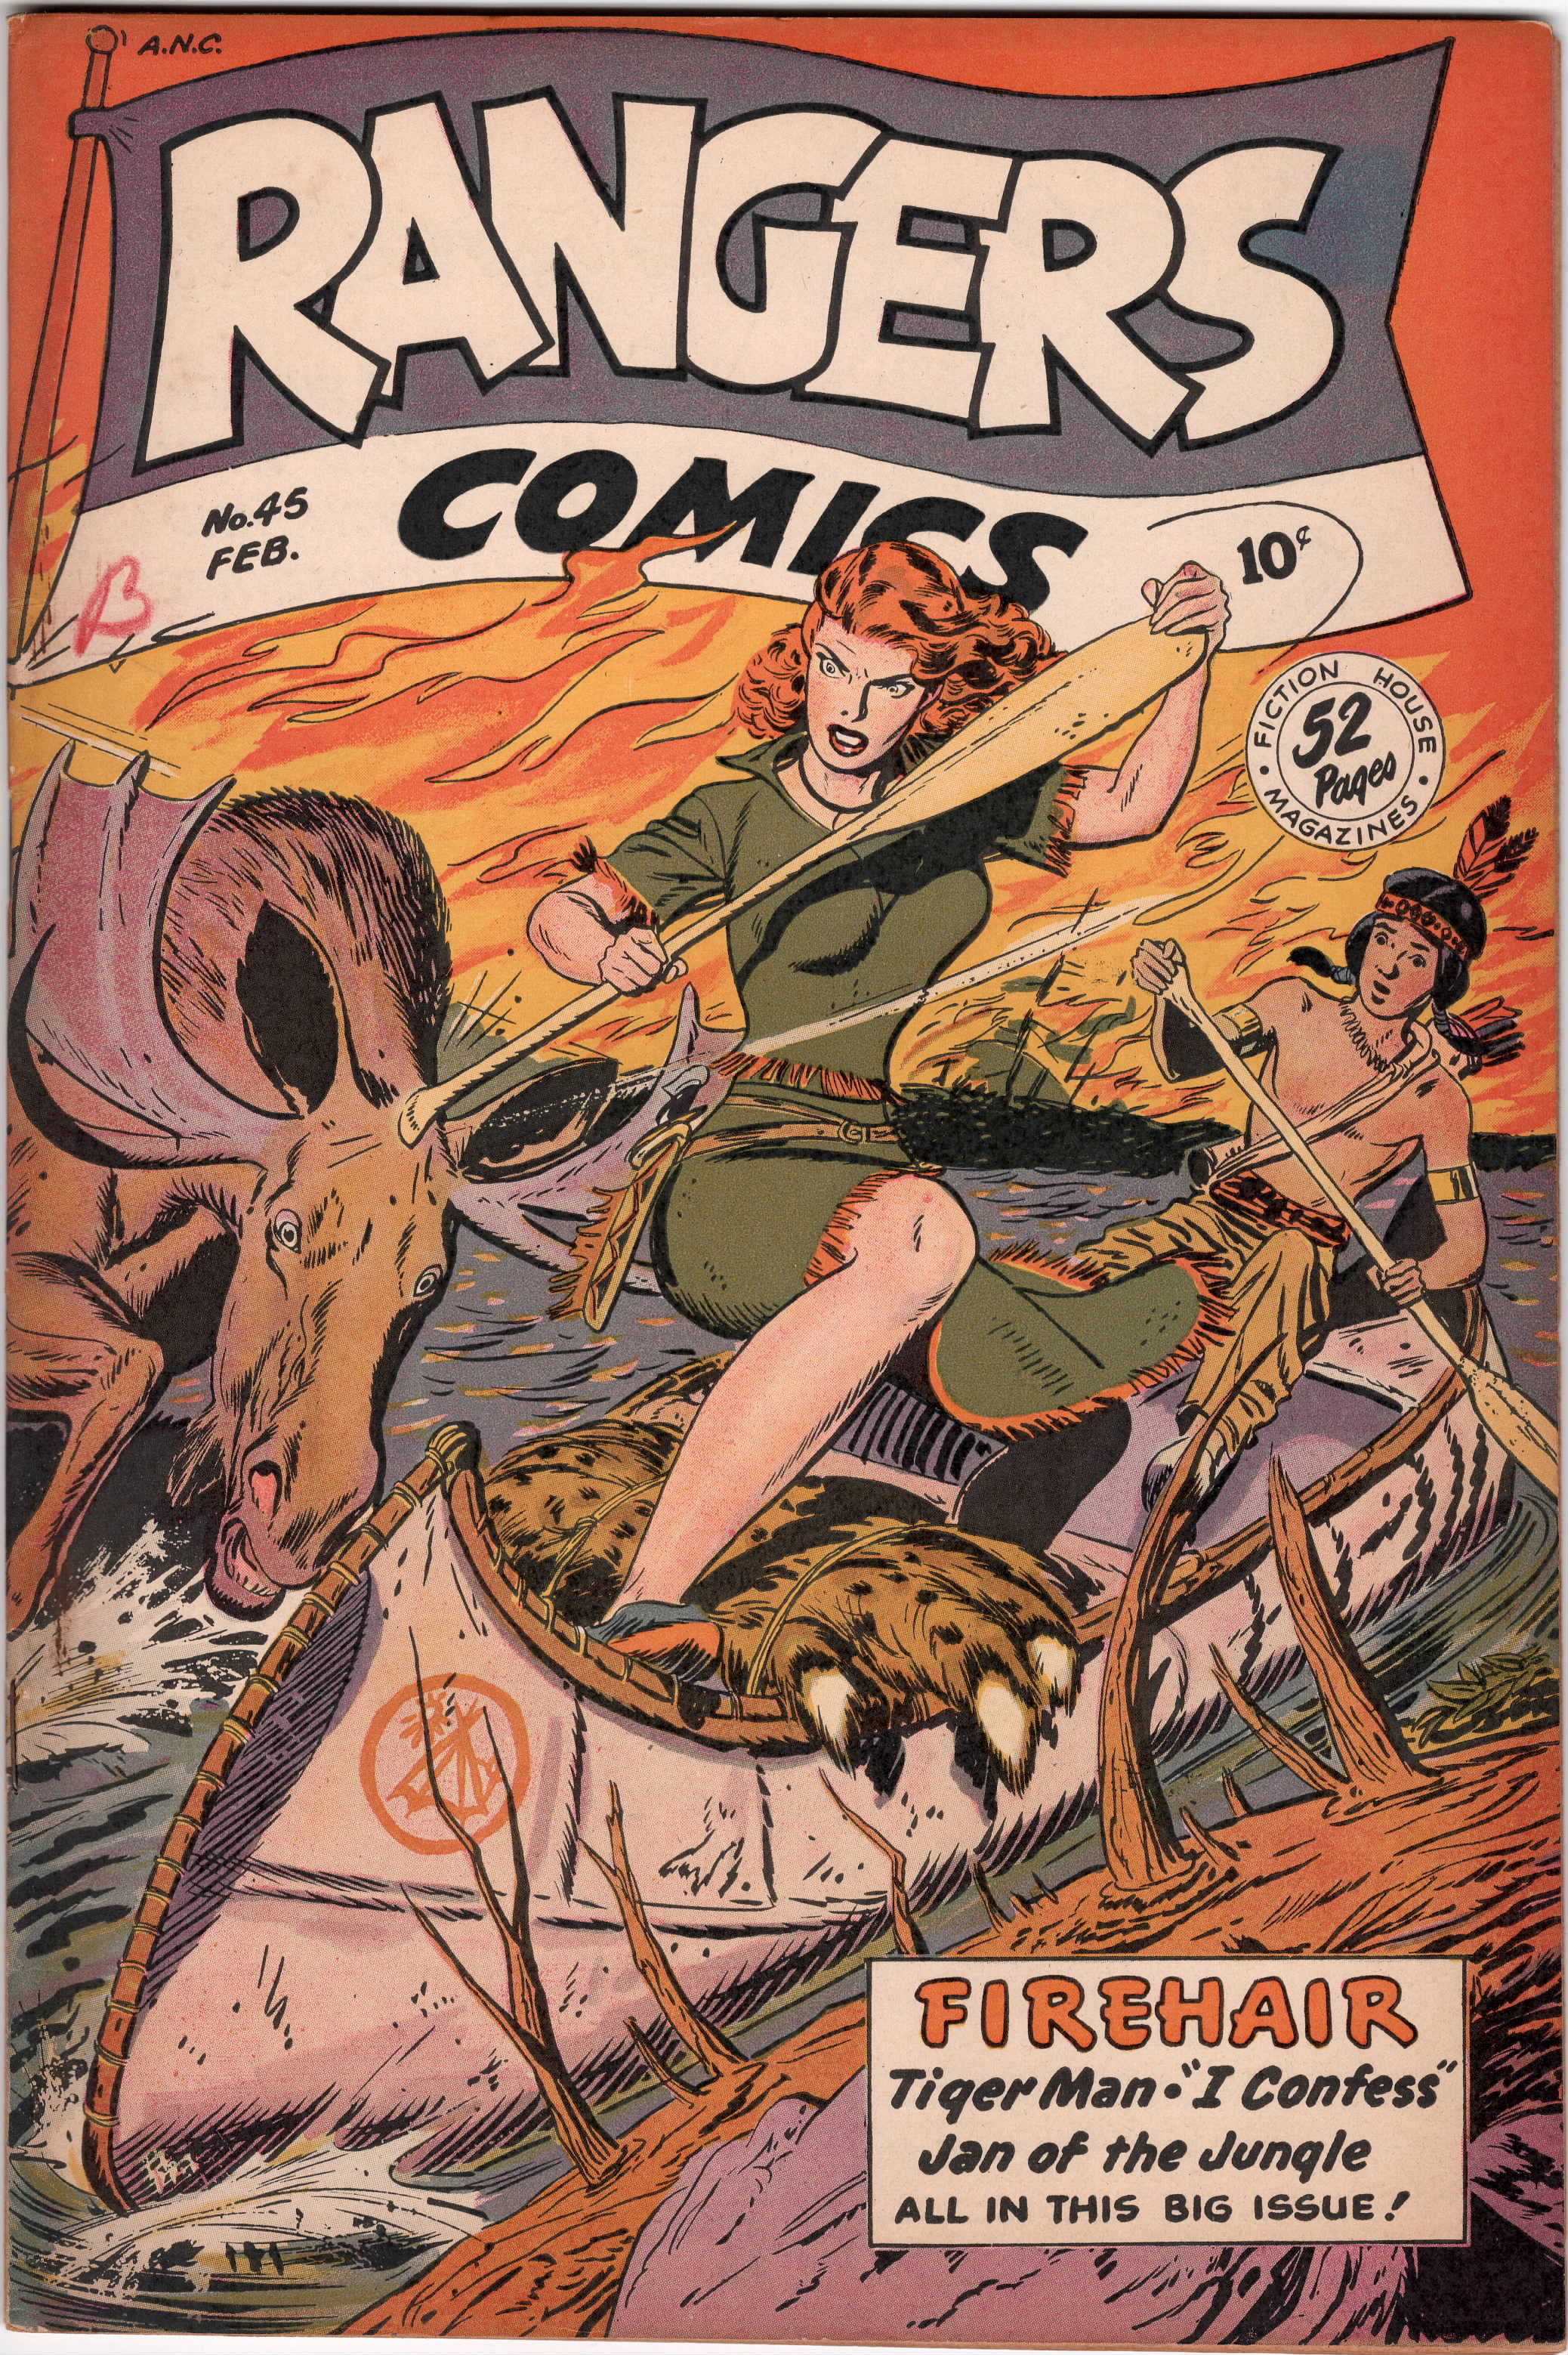 Rangers Comics #45